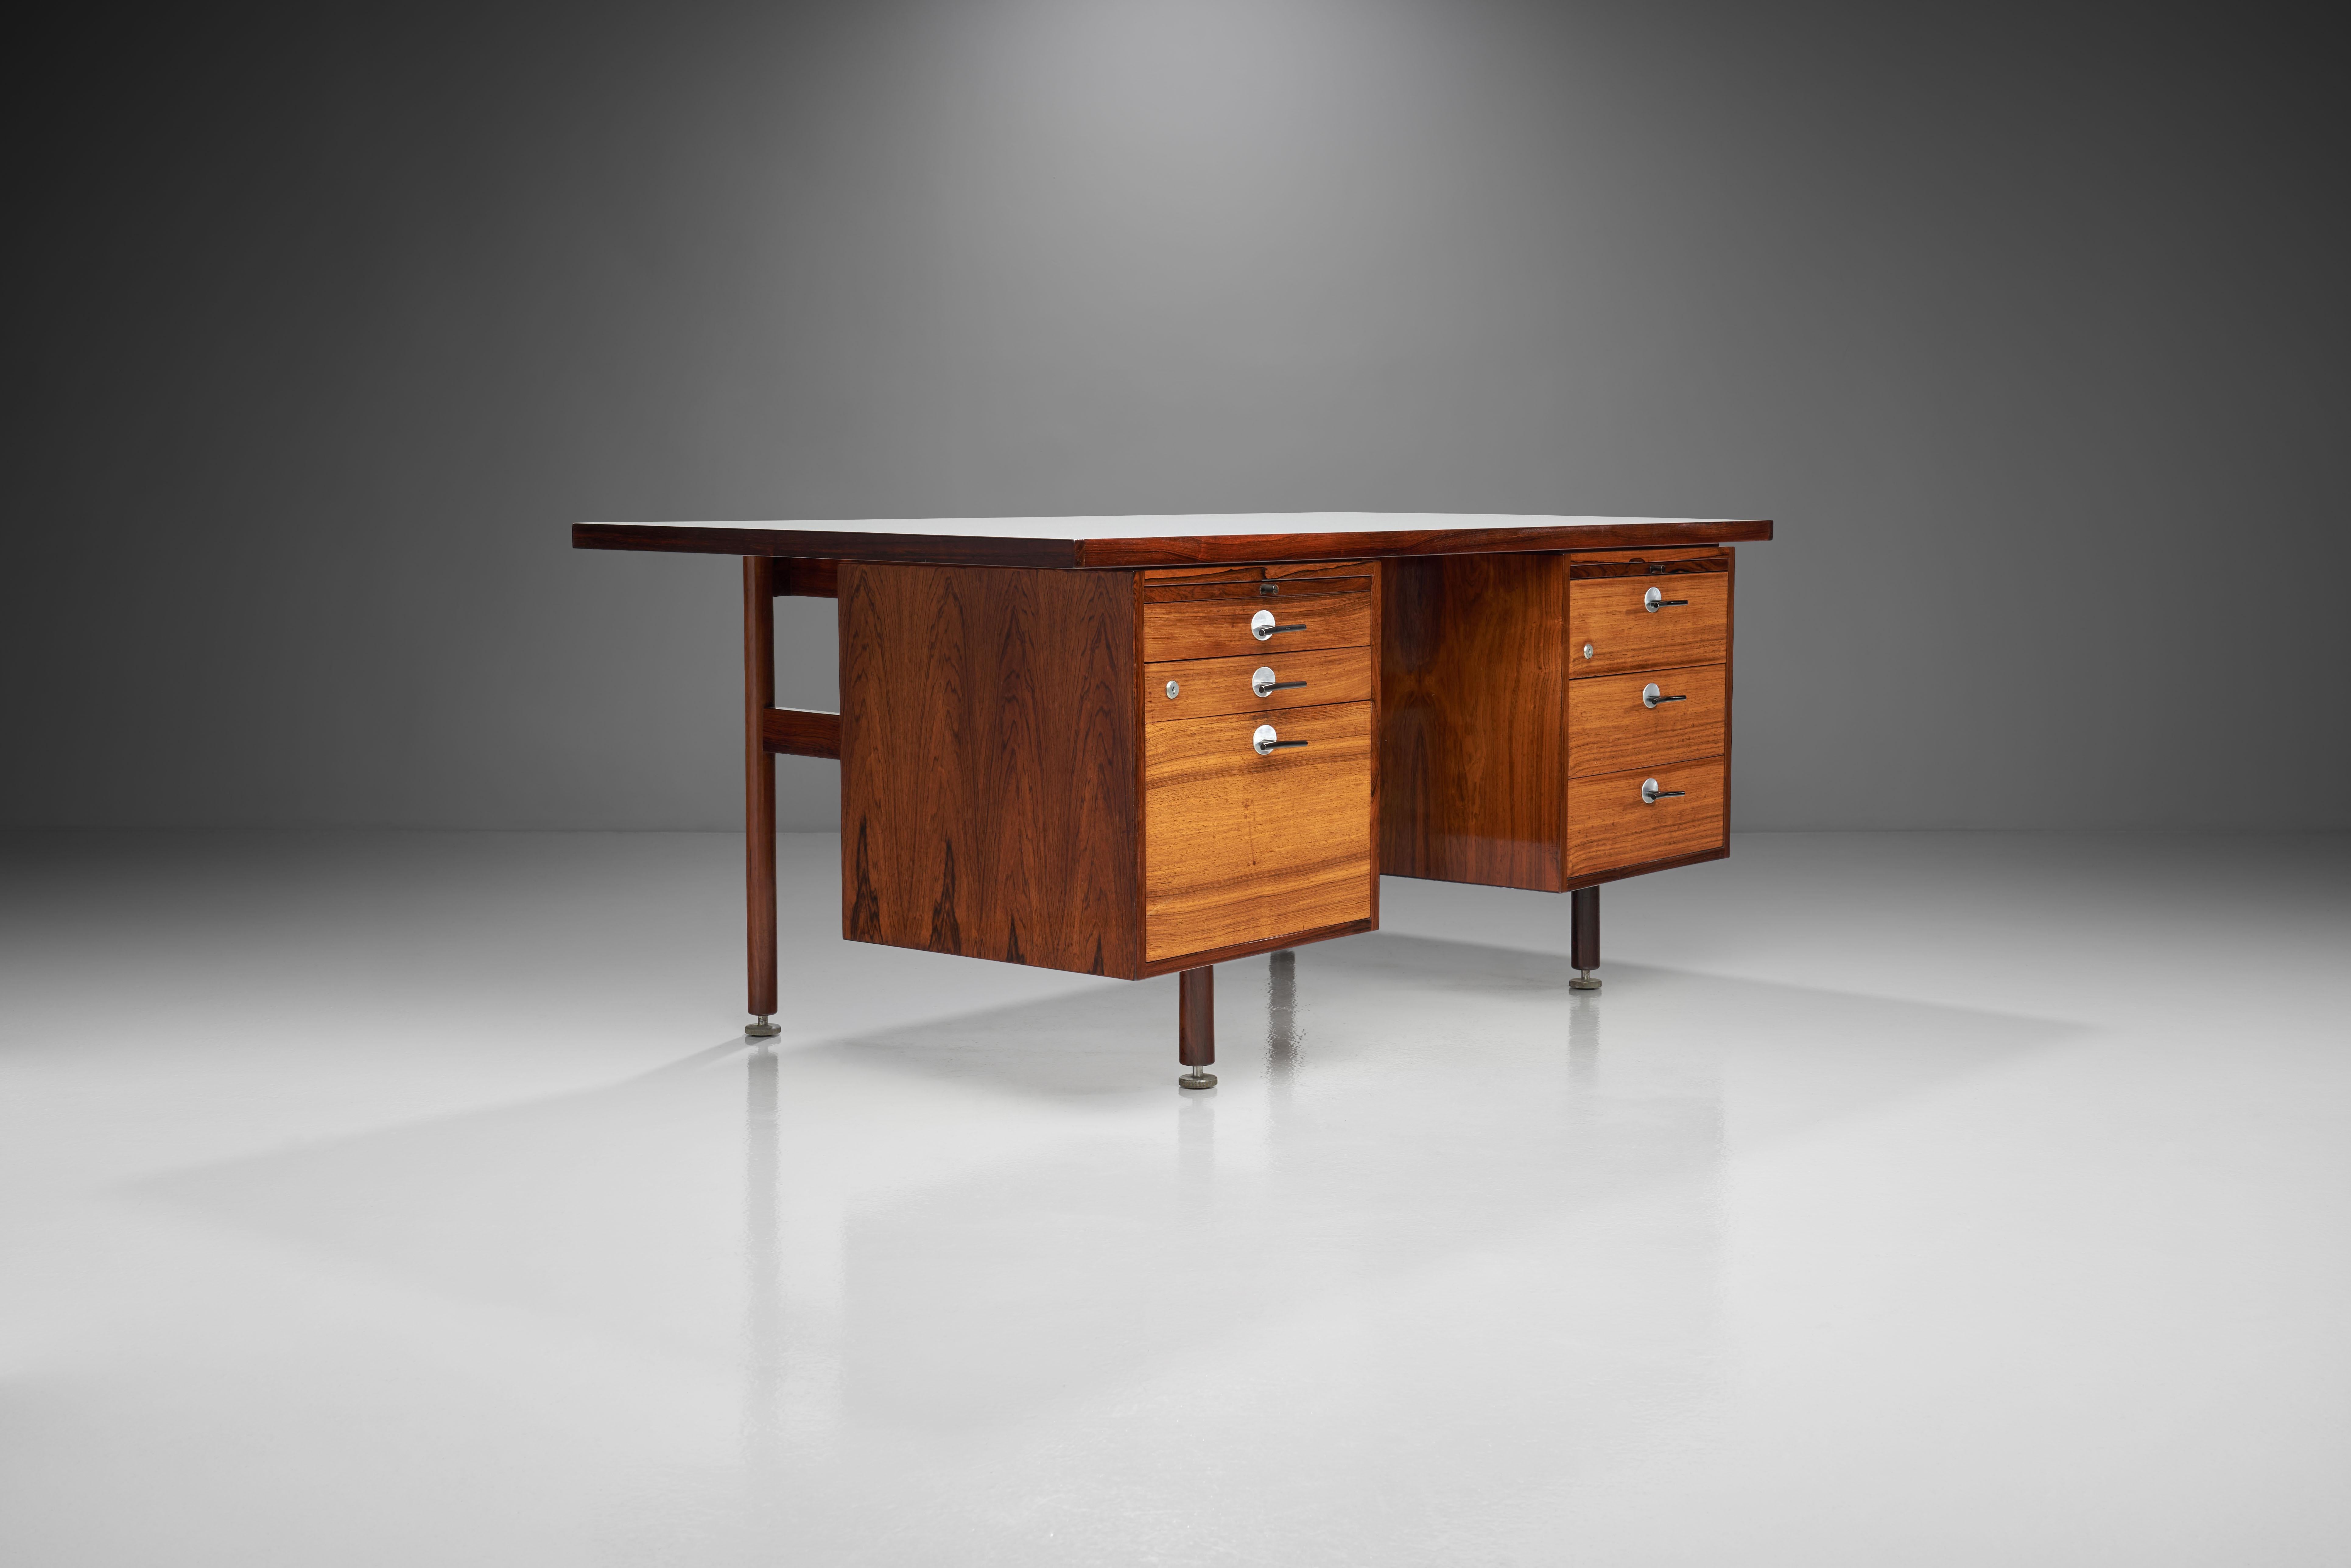 Jens Risom: Schreibtisch aus Holz, hergestellt von Risom Design. 1960s. 

Dieser formschöne Schreibtisch von Jens Risom hat eine gut dimensionierte Arbeitsfläche, zwei Schubladenschränke mit Schubladen und eine ausziehbare Platte mit Glasplatte